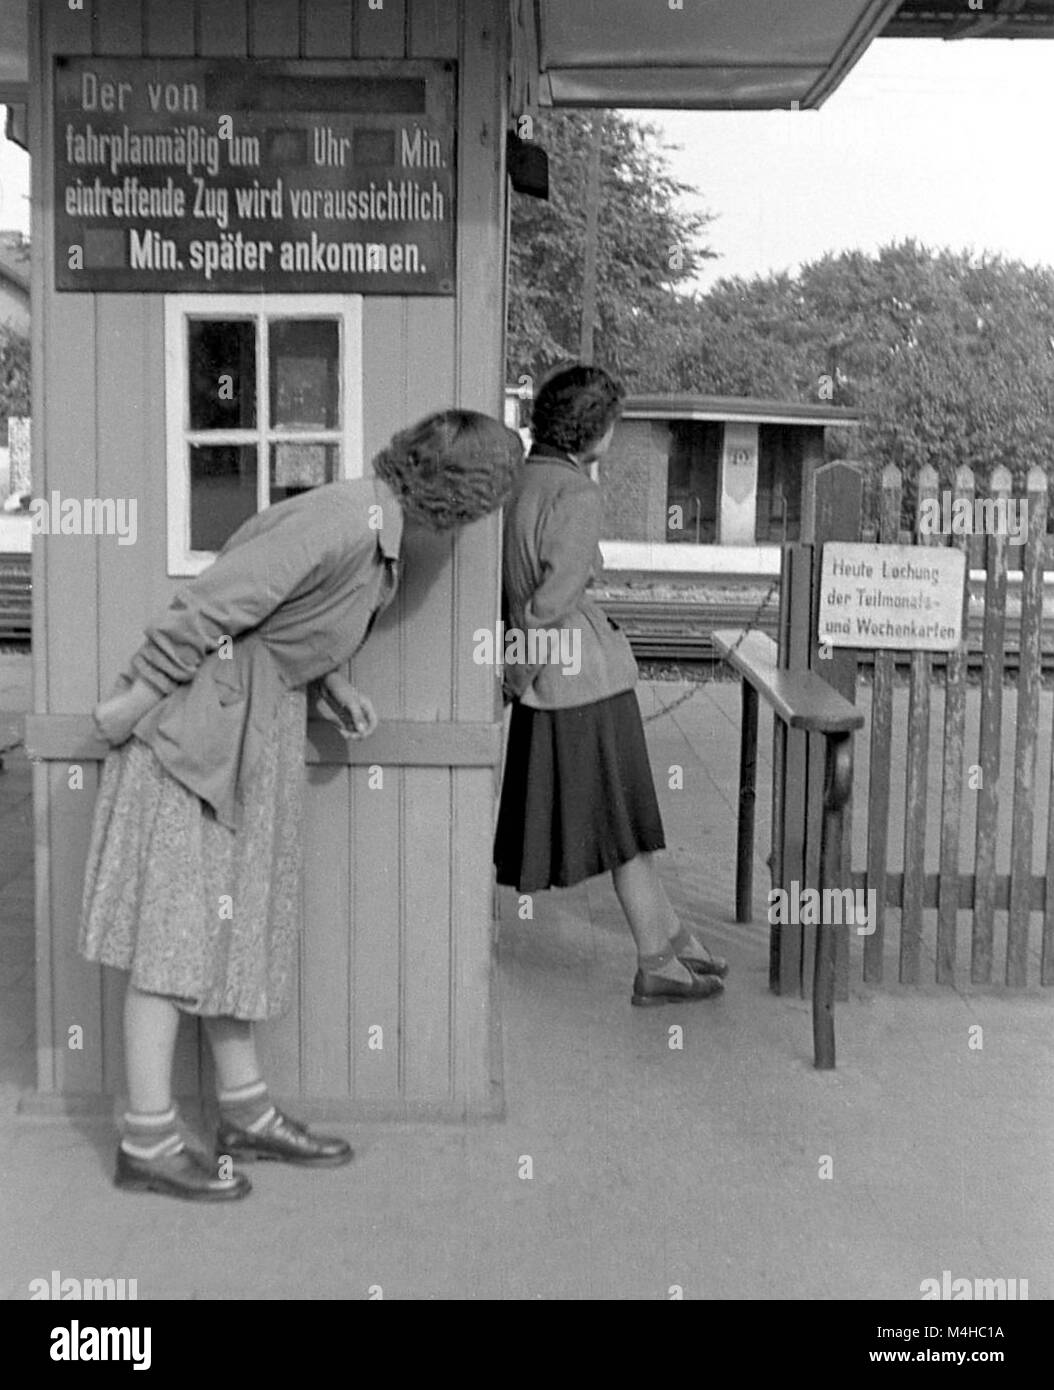 Dos niñas están esperando un tren en la estación de Warnemuende, un  distrito de Rostock. En una pizarra, figura la inscripción "el tren que  según el calendario debe llegar a .... o'clock,